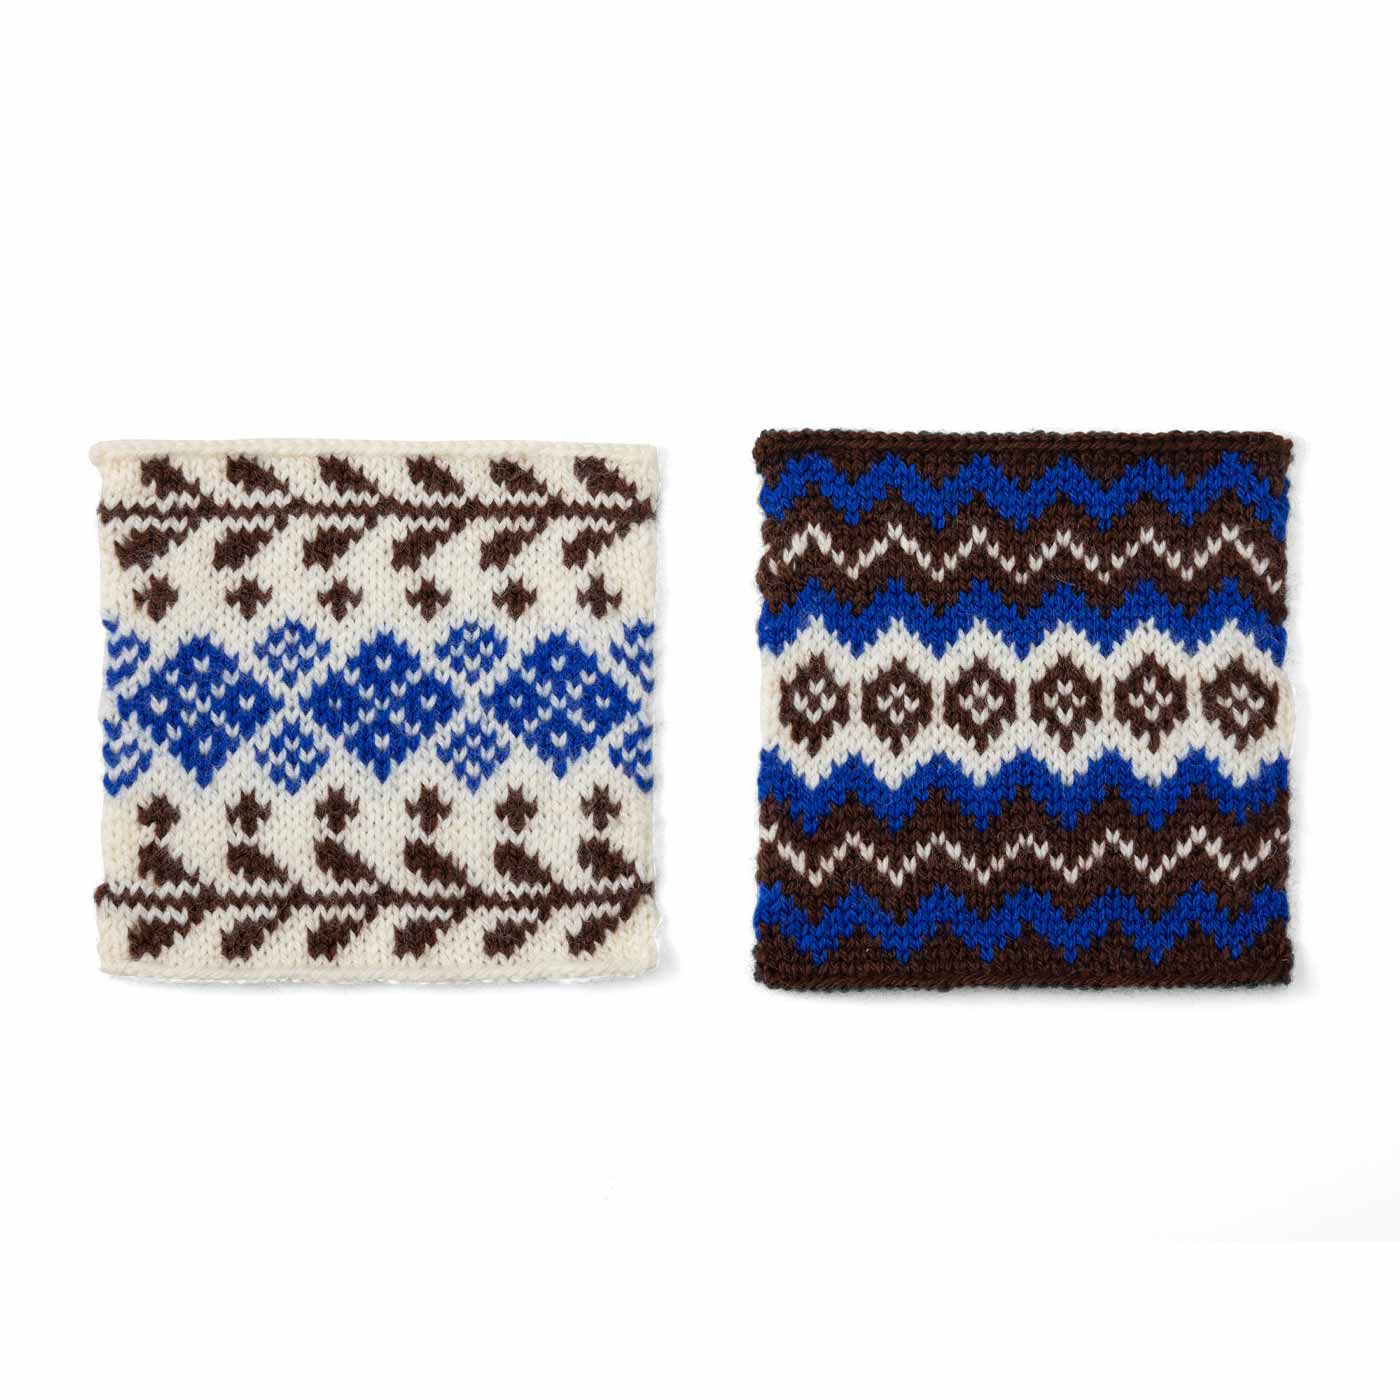 クチュリエ|自然からの贈りもの めくるめく北欧模様を楽しむ棒針編みサンプラーの会|大地の冬支度